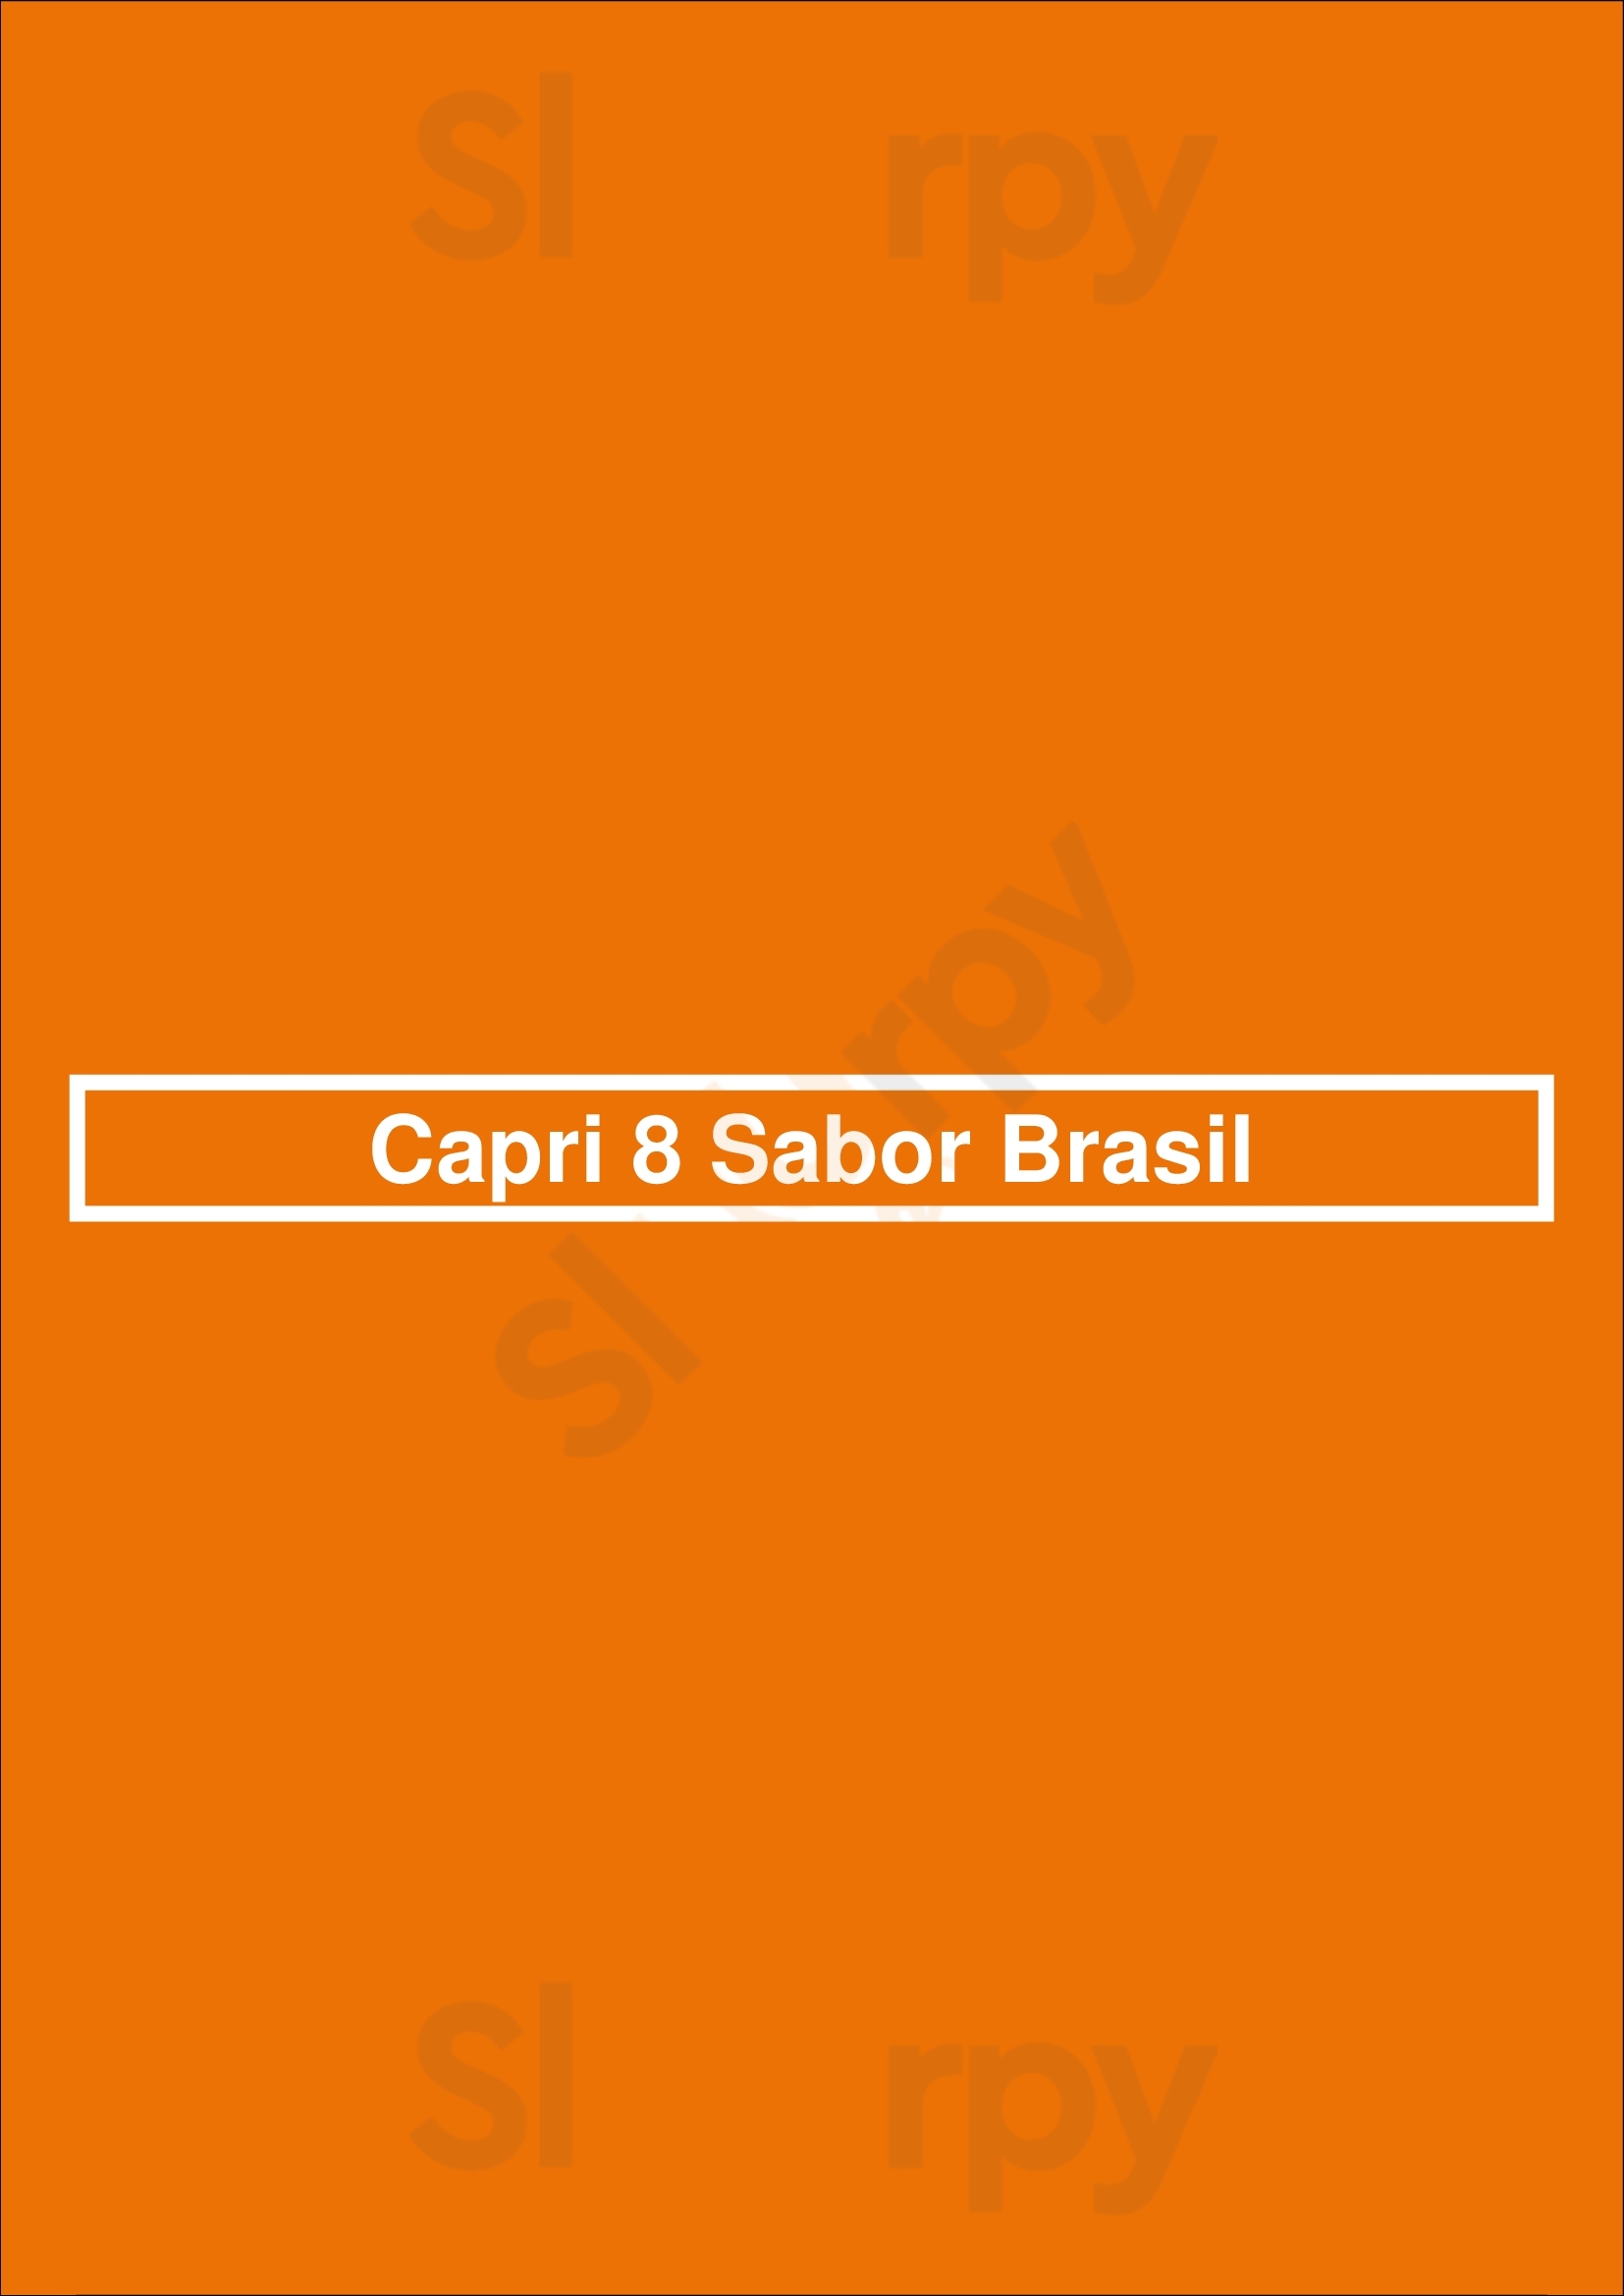 Capri 8 Sabor Brasil Madrid Menu - 1